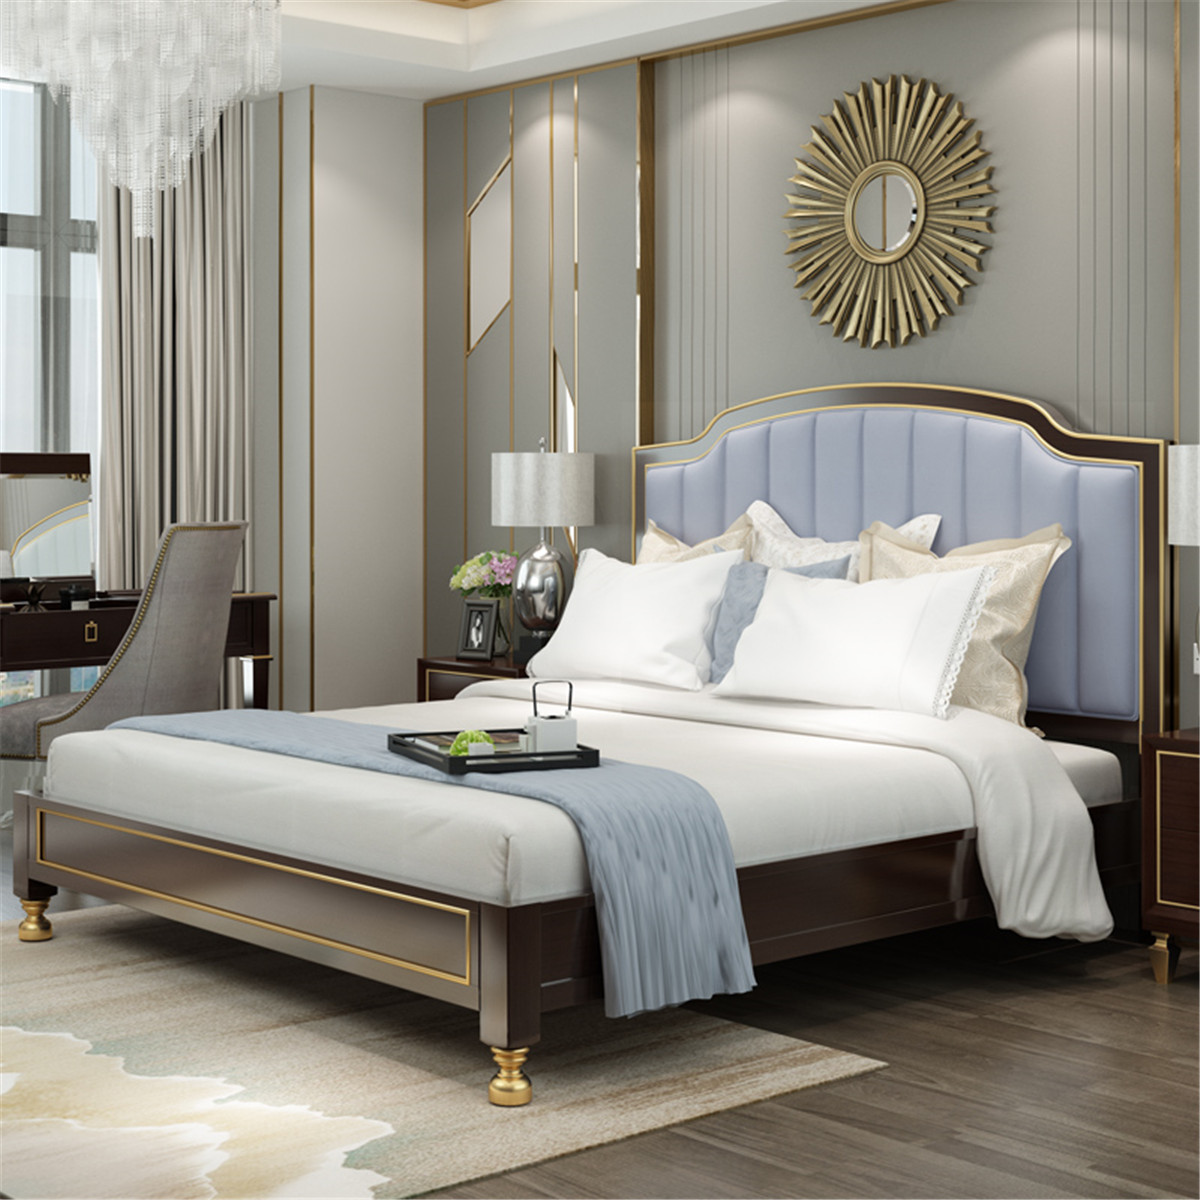 新美式全实木床18米主卧床双人床后现代高端轻奢家具婚床大床